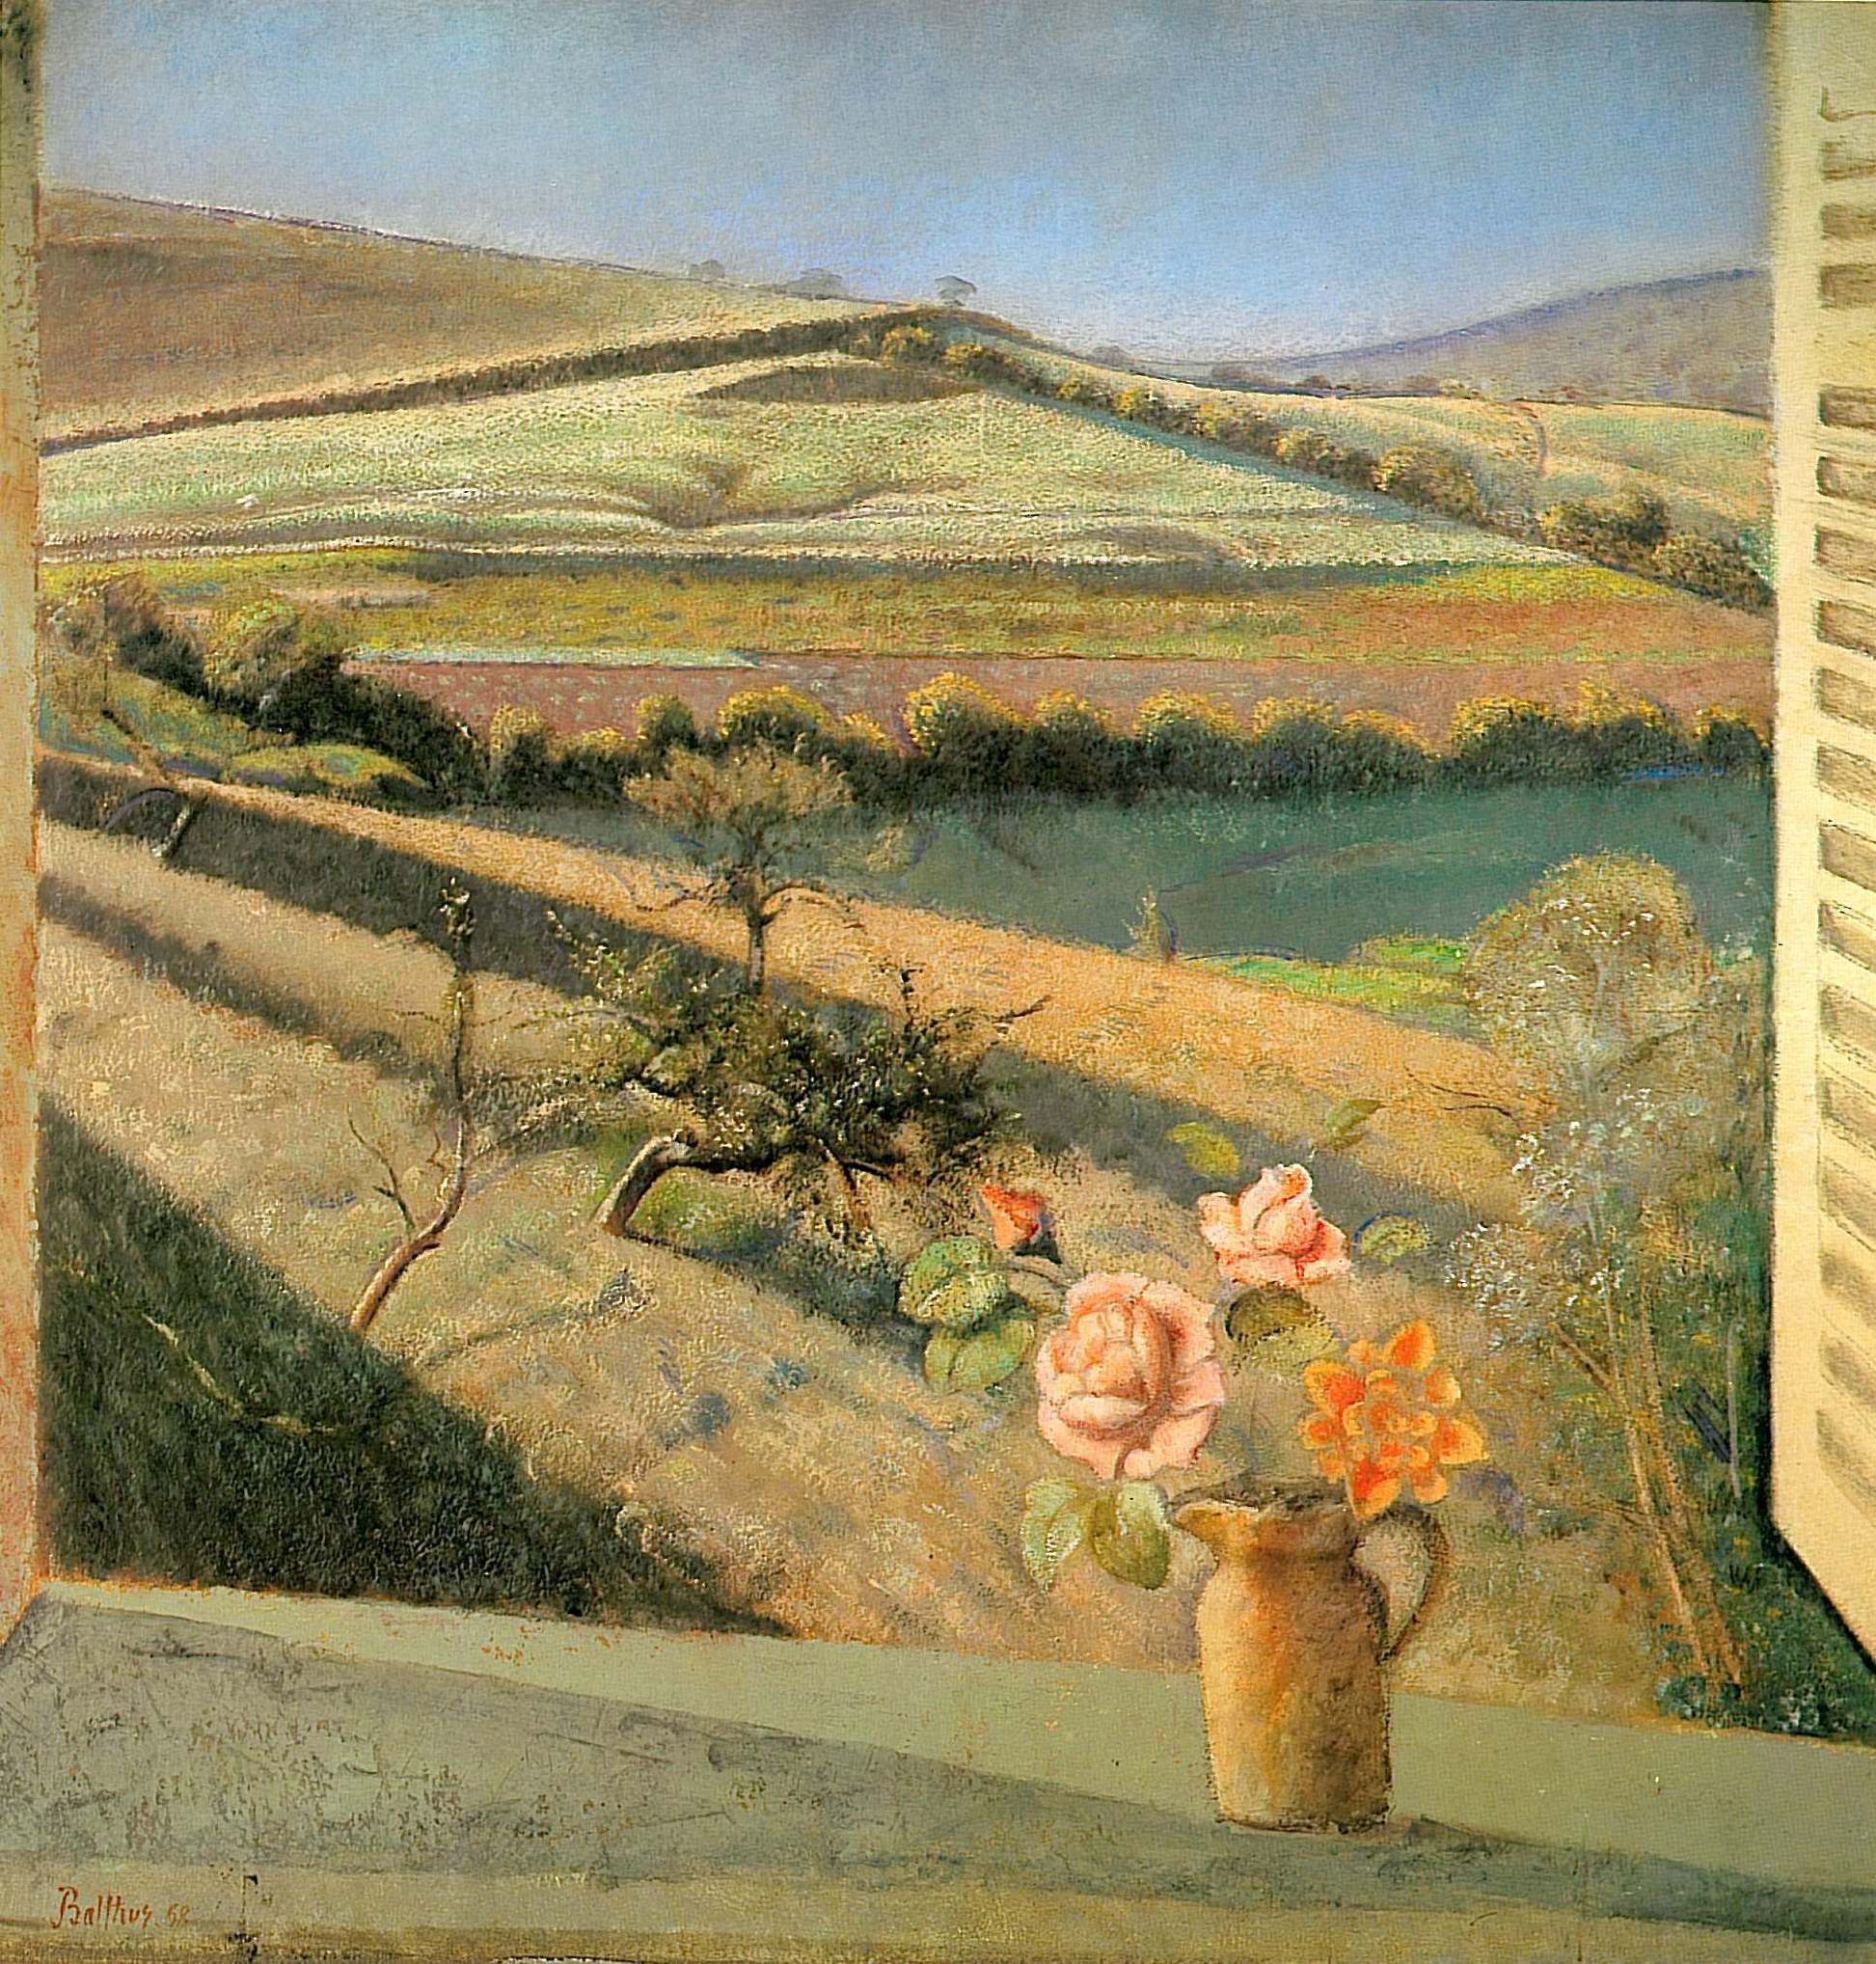 《窗台上的玫瑰》巴尔蒂斯画作介绍及画作含义/创作背景